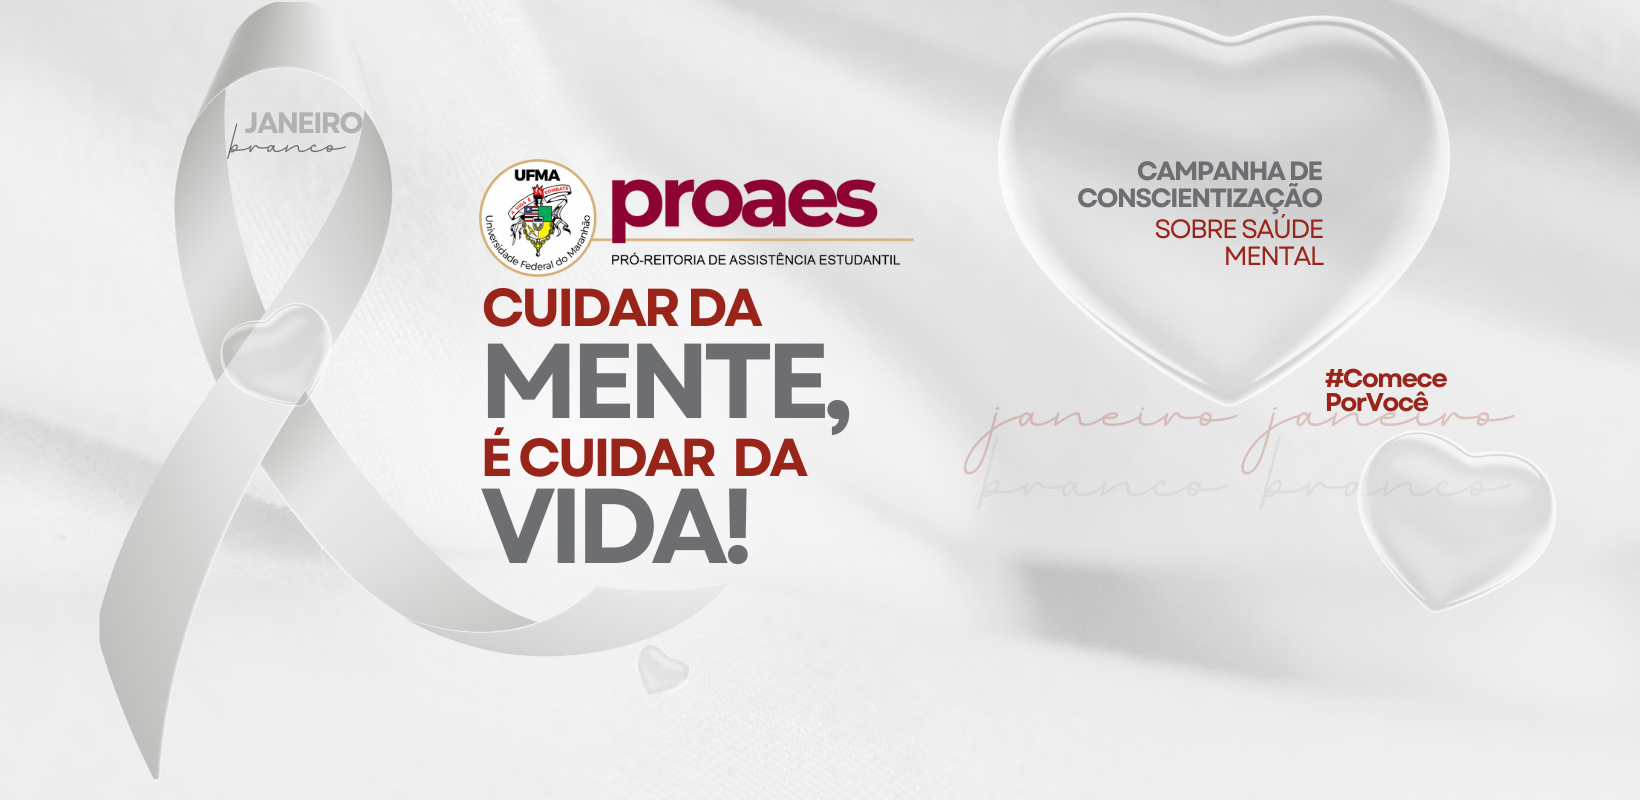 proaes é amor (1640 x 800 px) (6).png